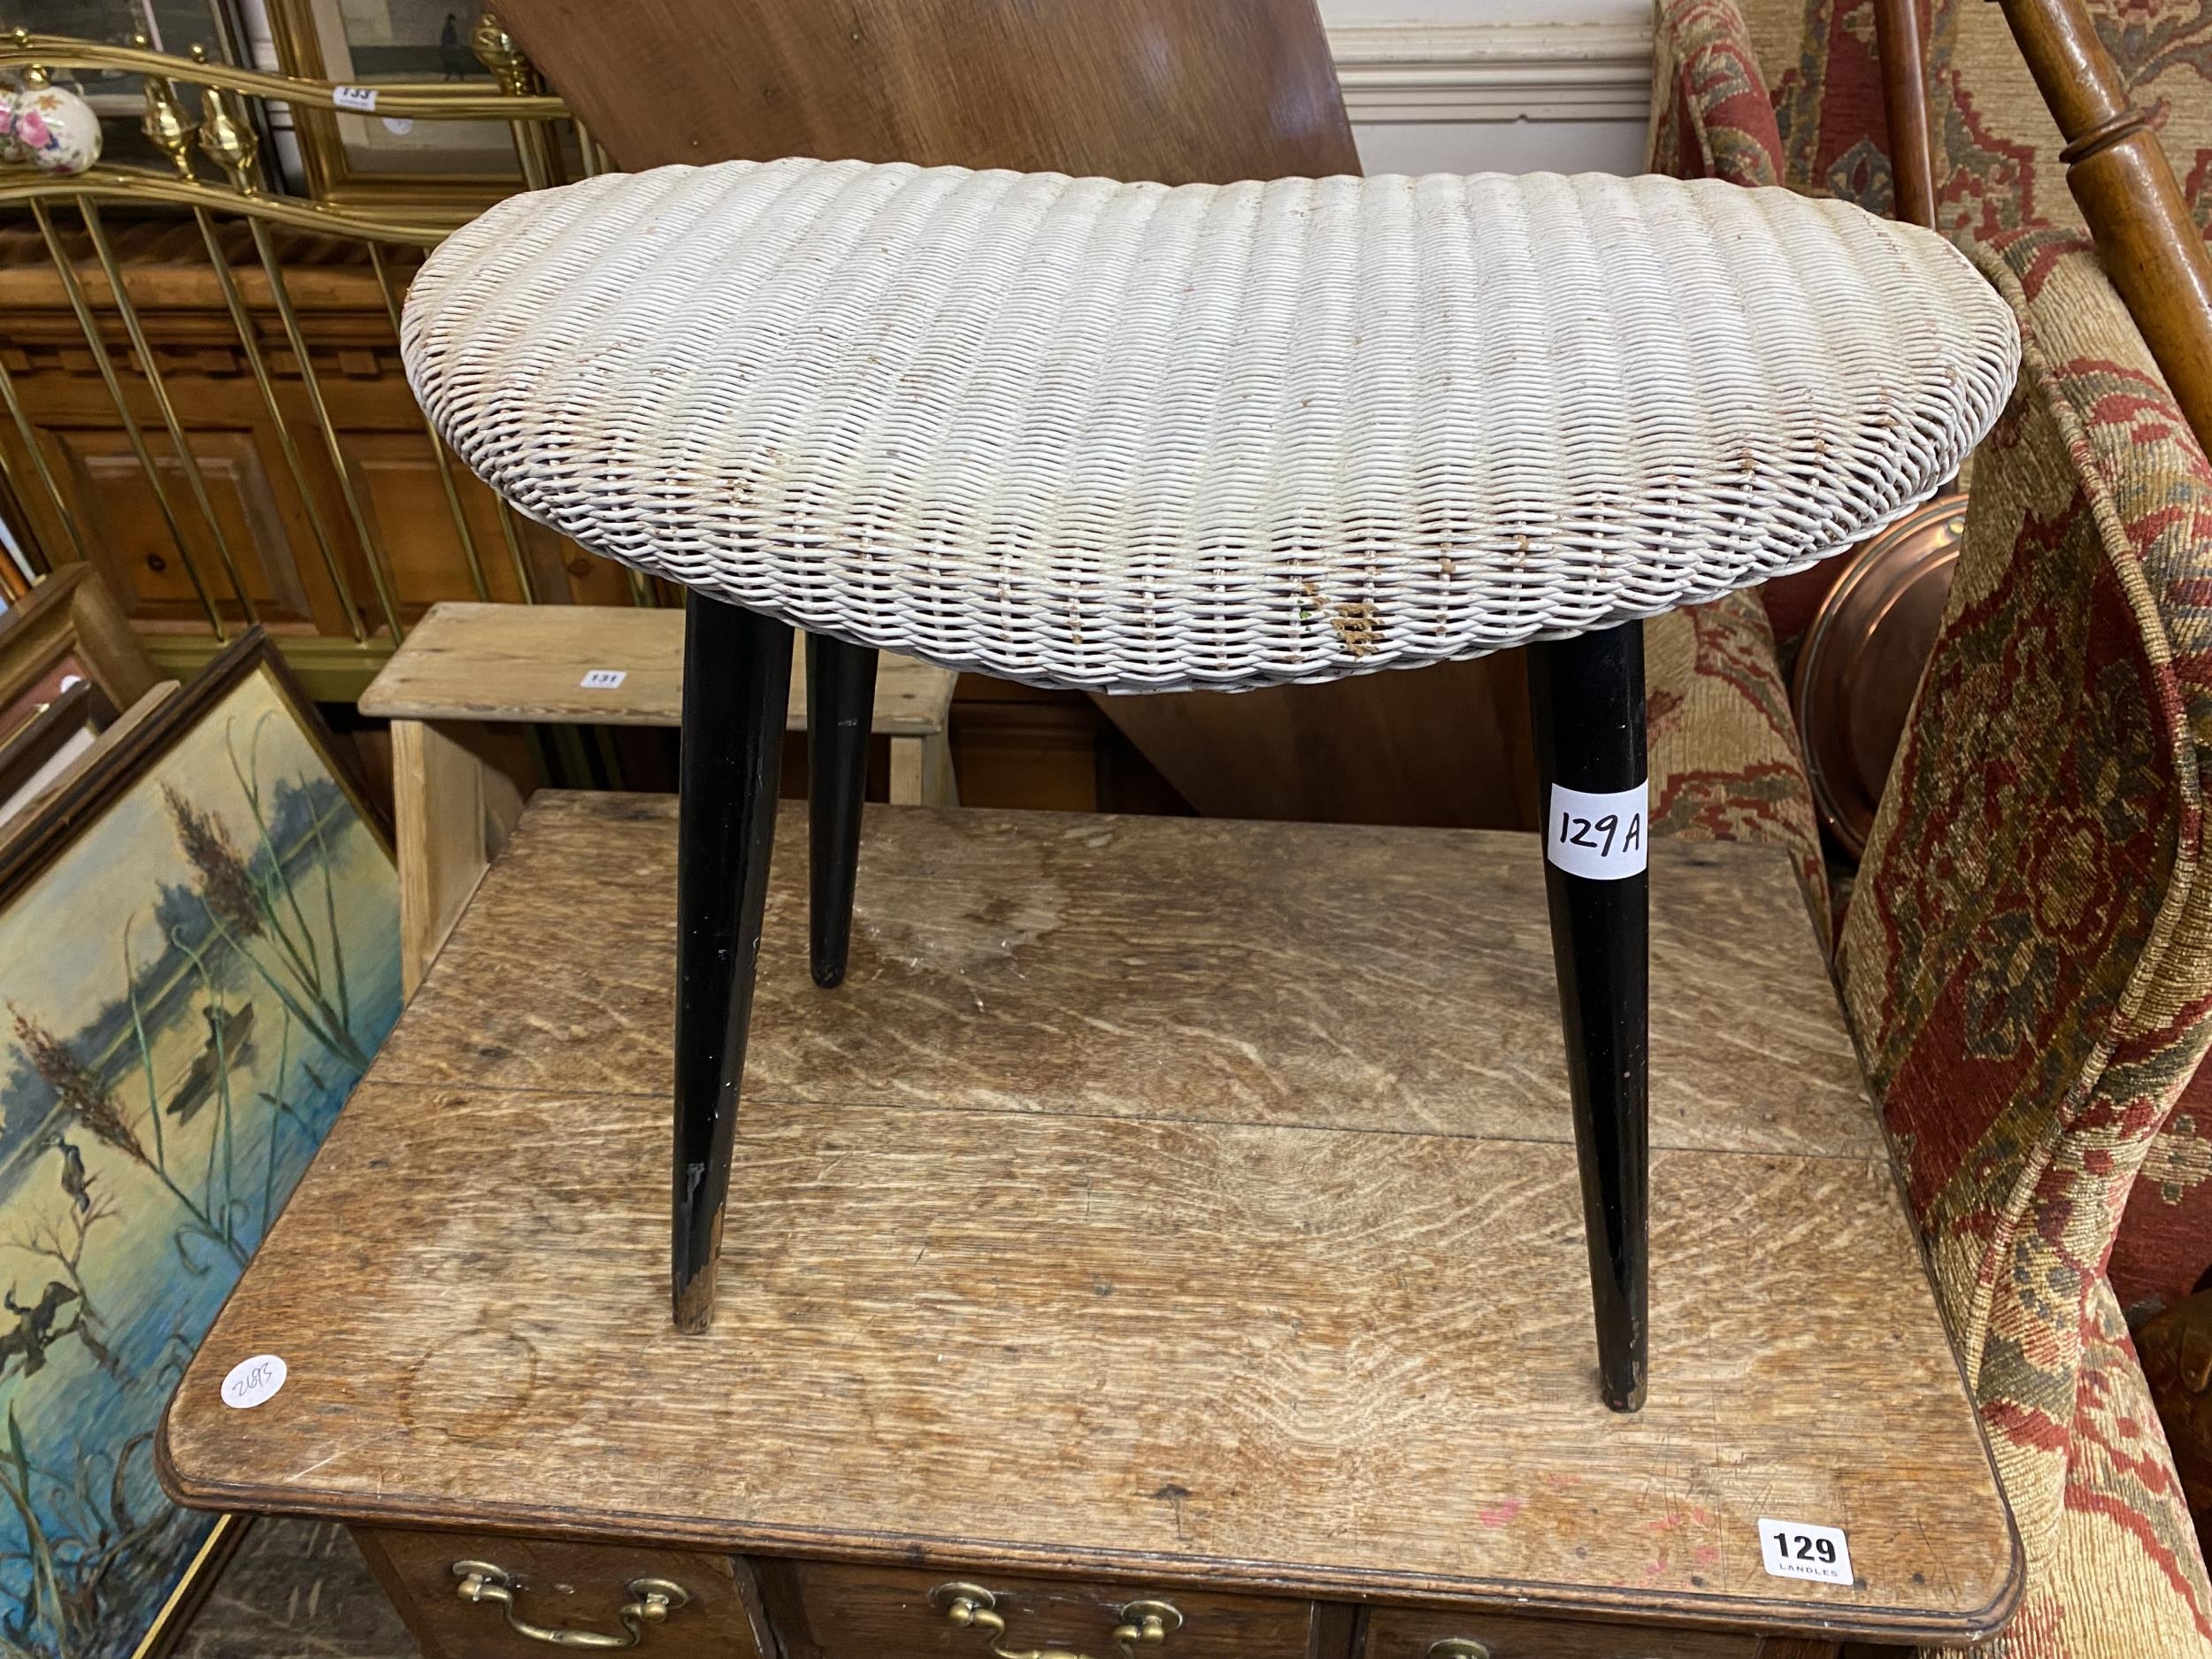 A Lloyd Loom stool